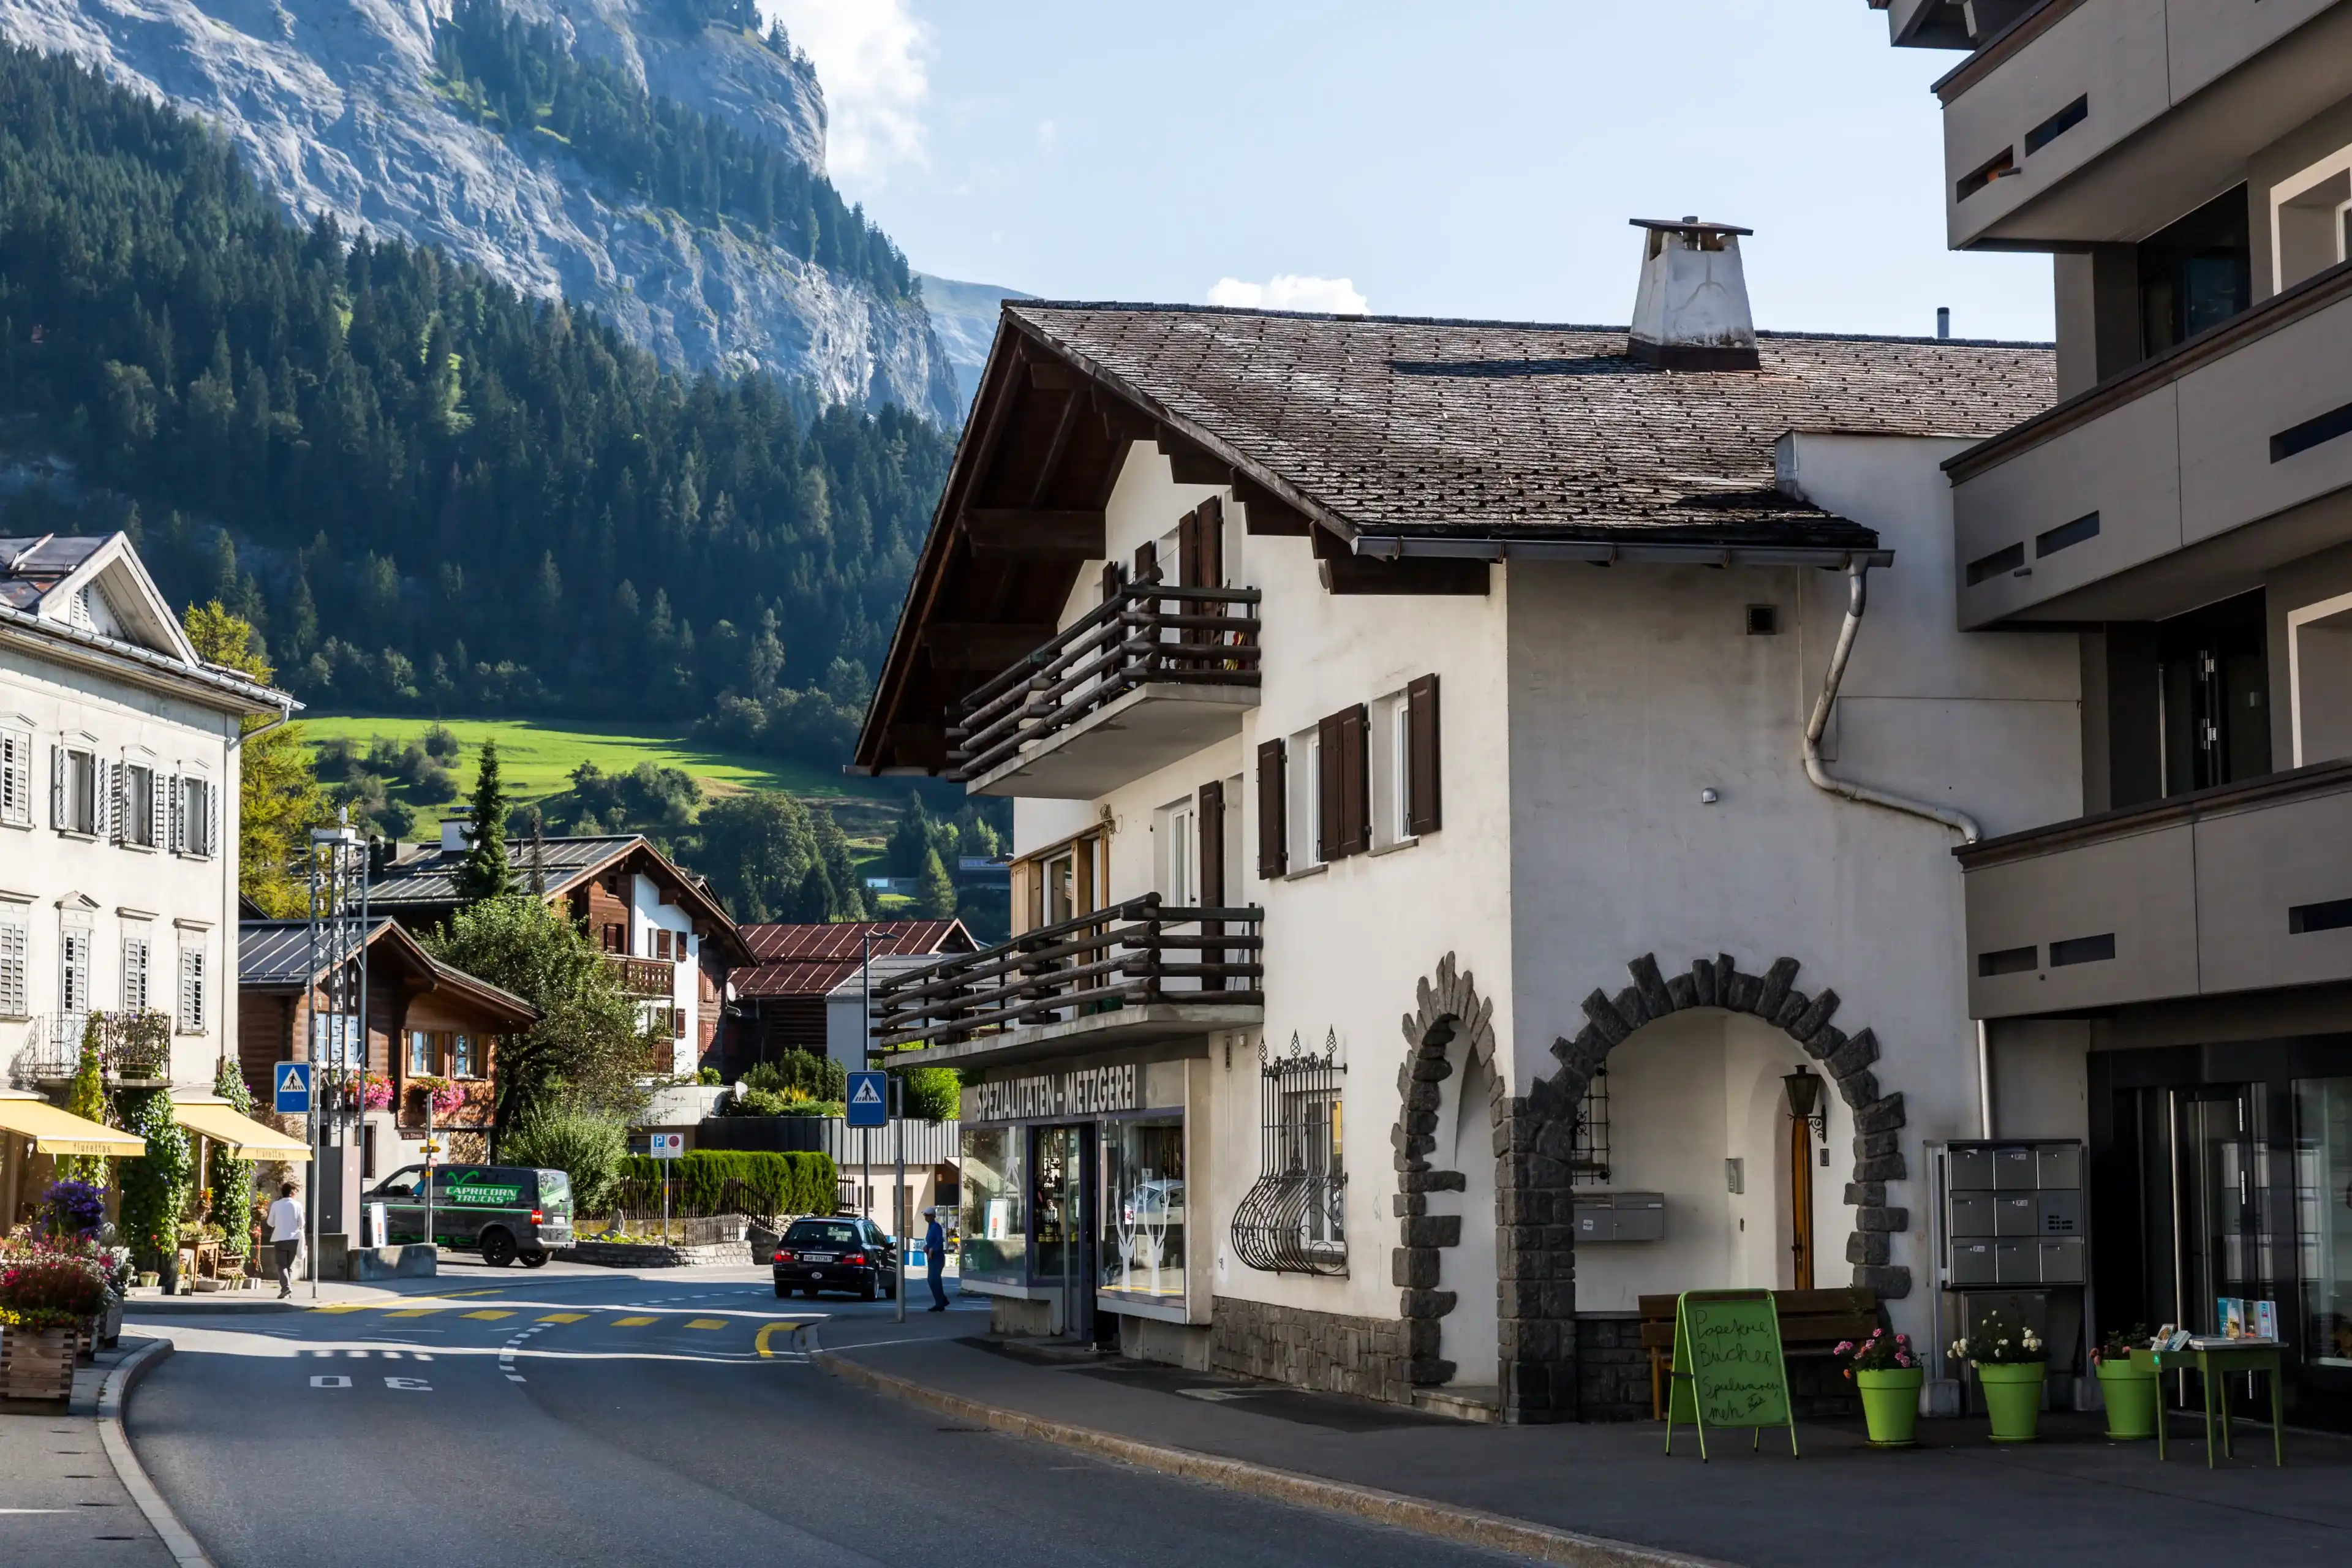 Best Flims hotels. Cheap hotels in Flims, Switzerland